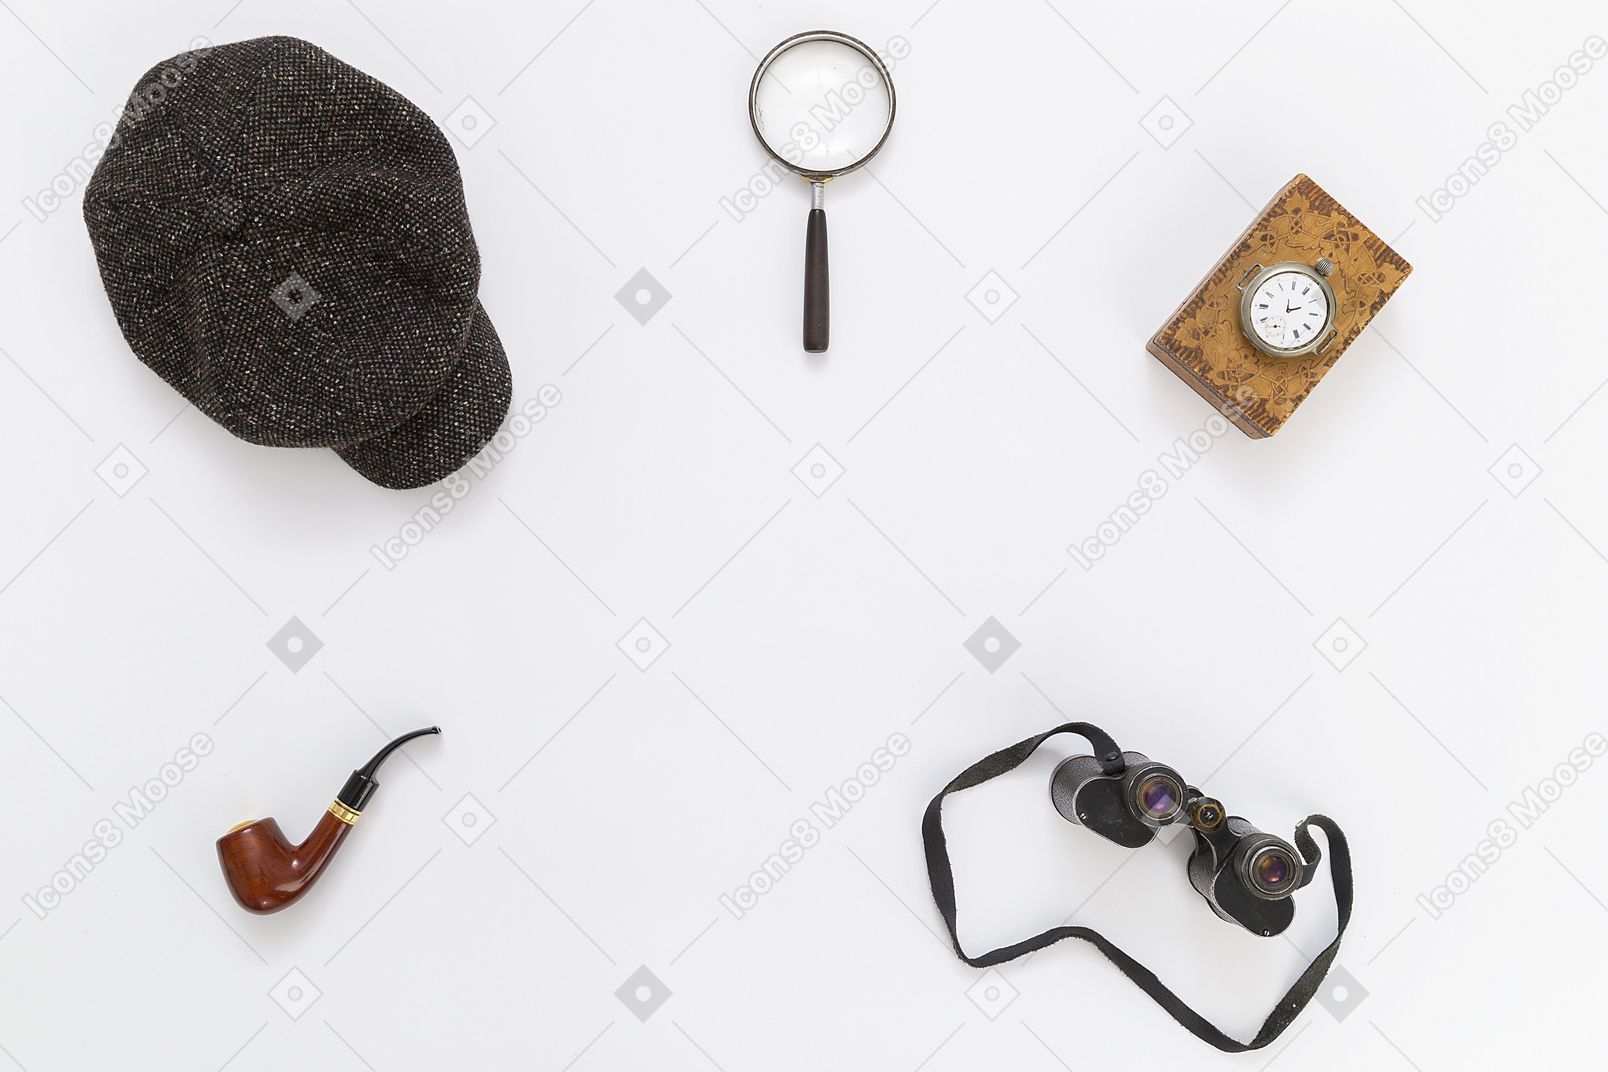 Detective equipment